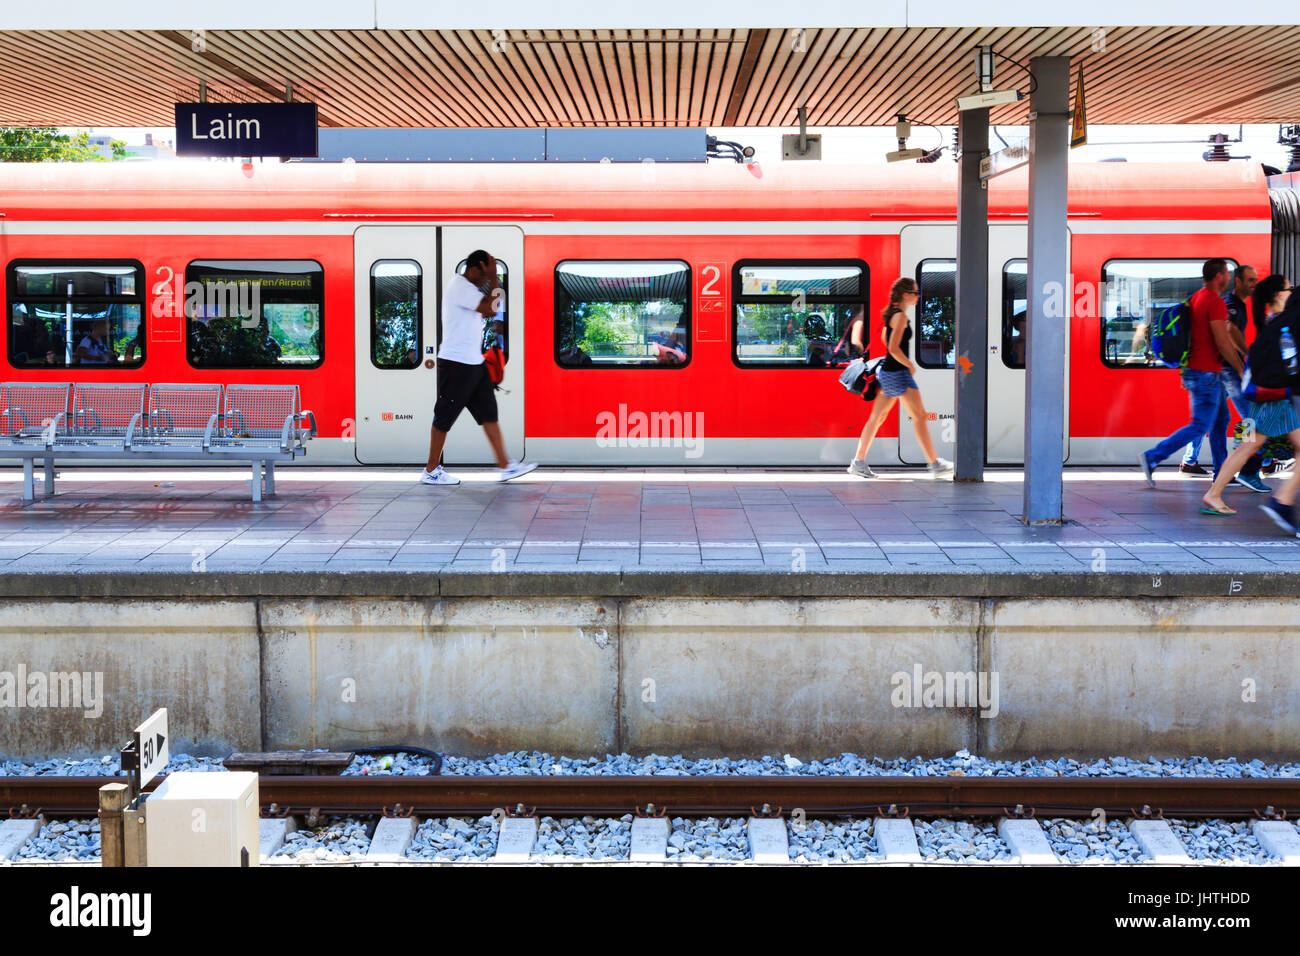 S-Bahn-Zug am Bahnsteig, Bahnhof Laim, München, Bayern, Deutschland Stockfoto